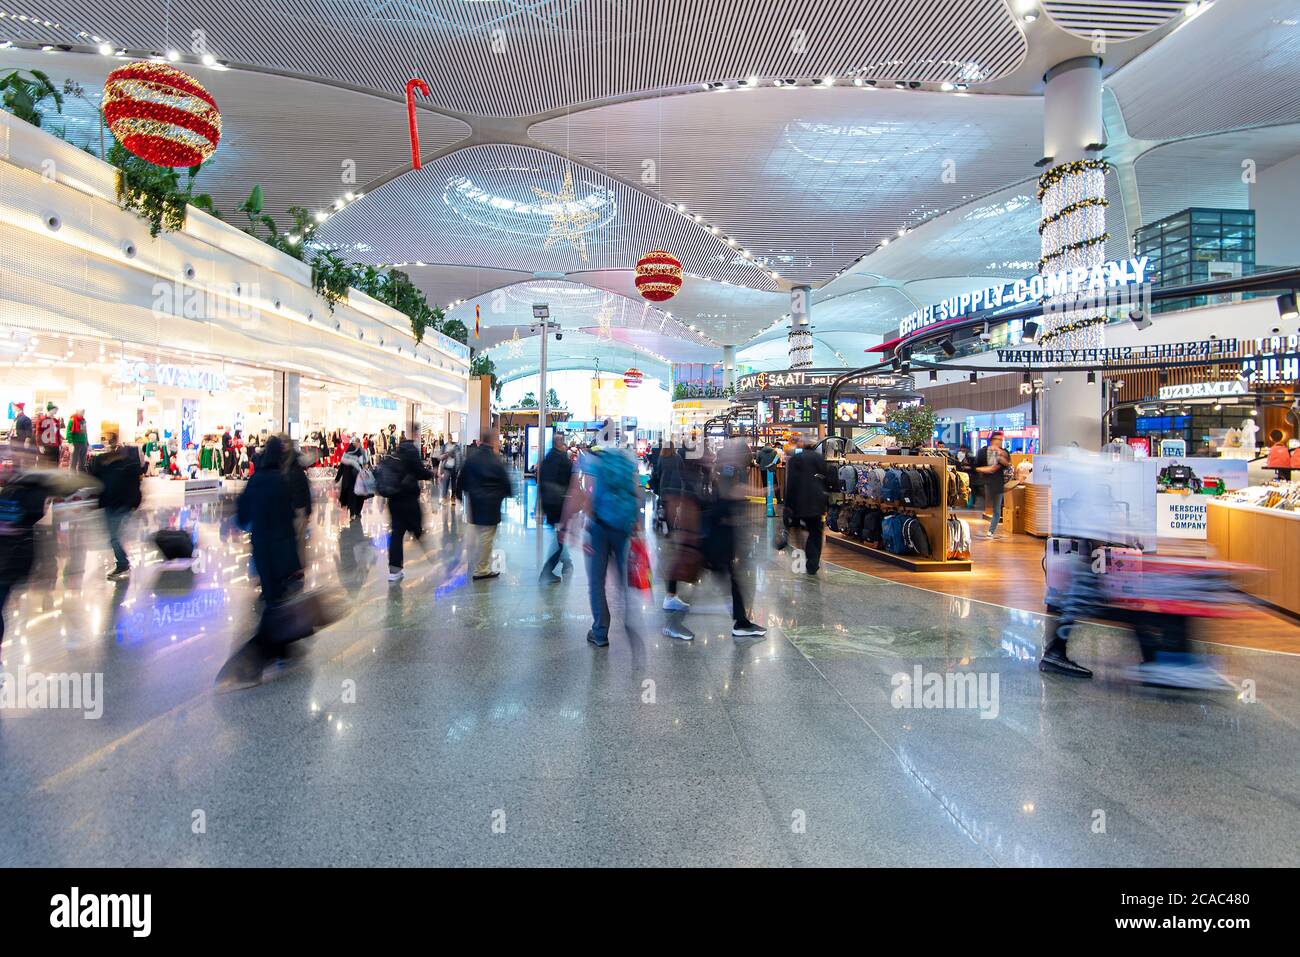 ISTANBUL - 03 JANVIER : passagers à l'aéroport d'Istanbul. Nouvel aéroport d'istanbul Havaliman avec des décorations de Noël et du nouvel an à Istanbul Banque D'Images